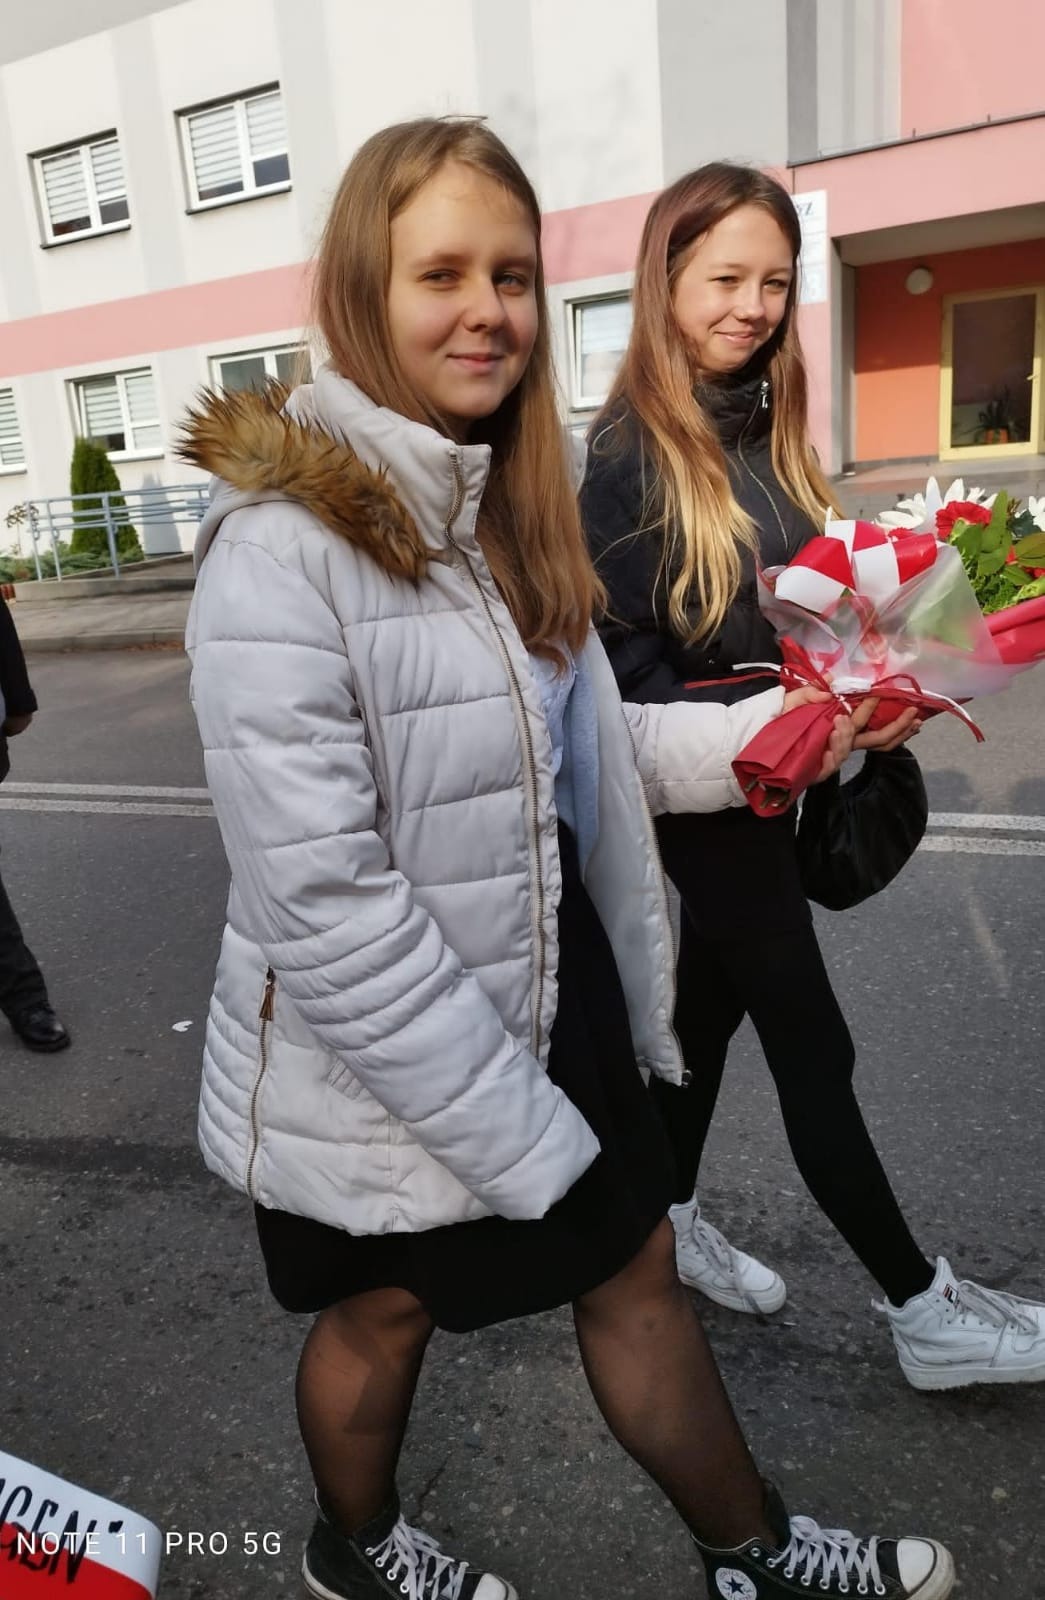 Dwie dziewczyny trzymają wiązankę biało czerwonych kwiatów. Jedna ubrana w biała kurtkę druga w czarną.